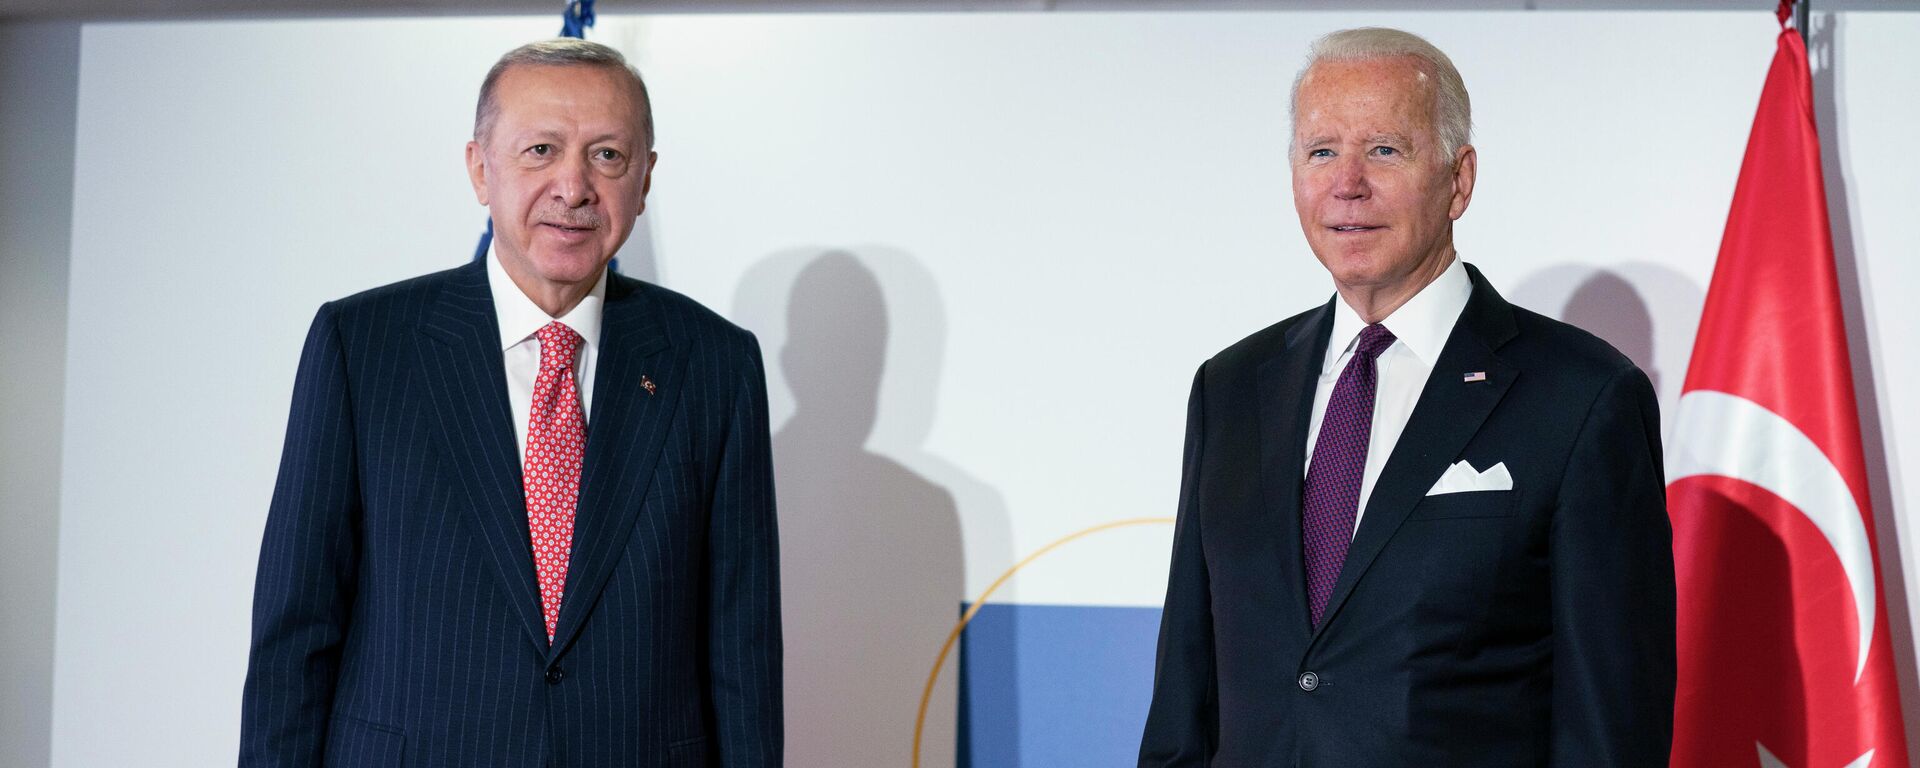 Председници Турске и САД, Реџеп Тајип Ердоган и Џозеф Бајден, на маргинама Самита Г20 у Риму  - Sputnik Србија, 1920, 03.11.2021